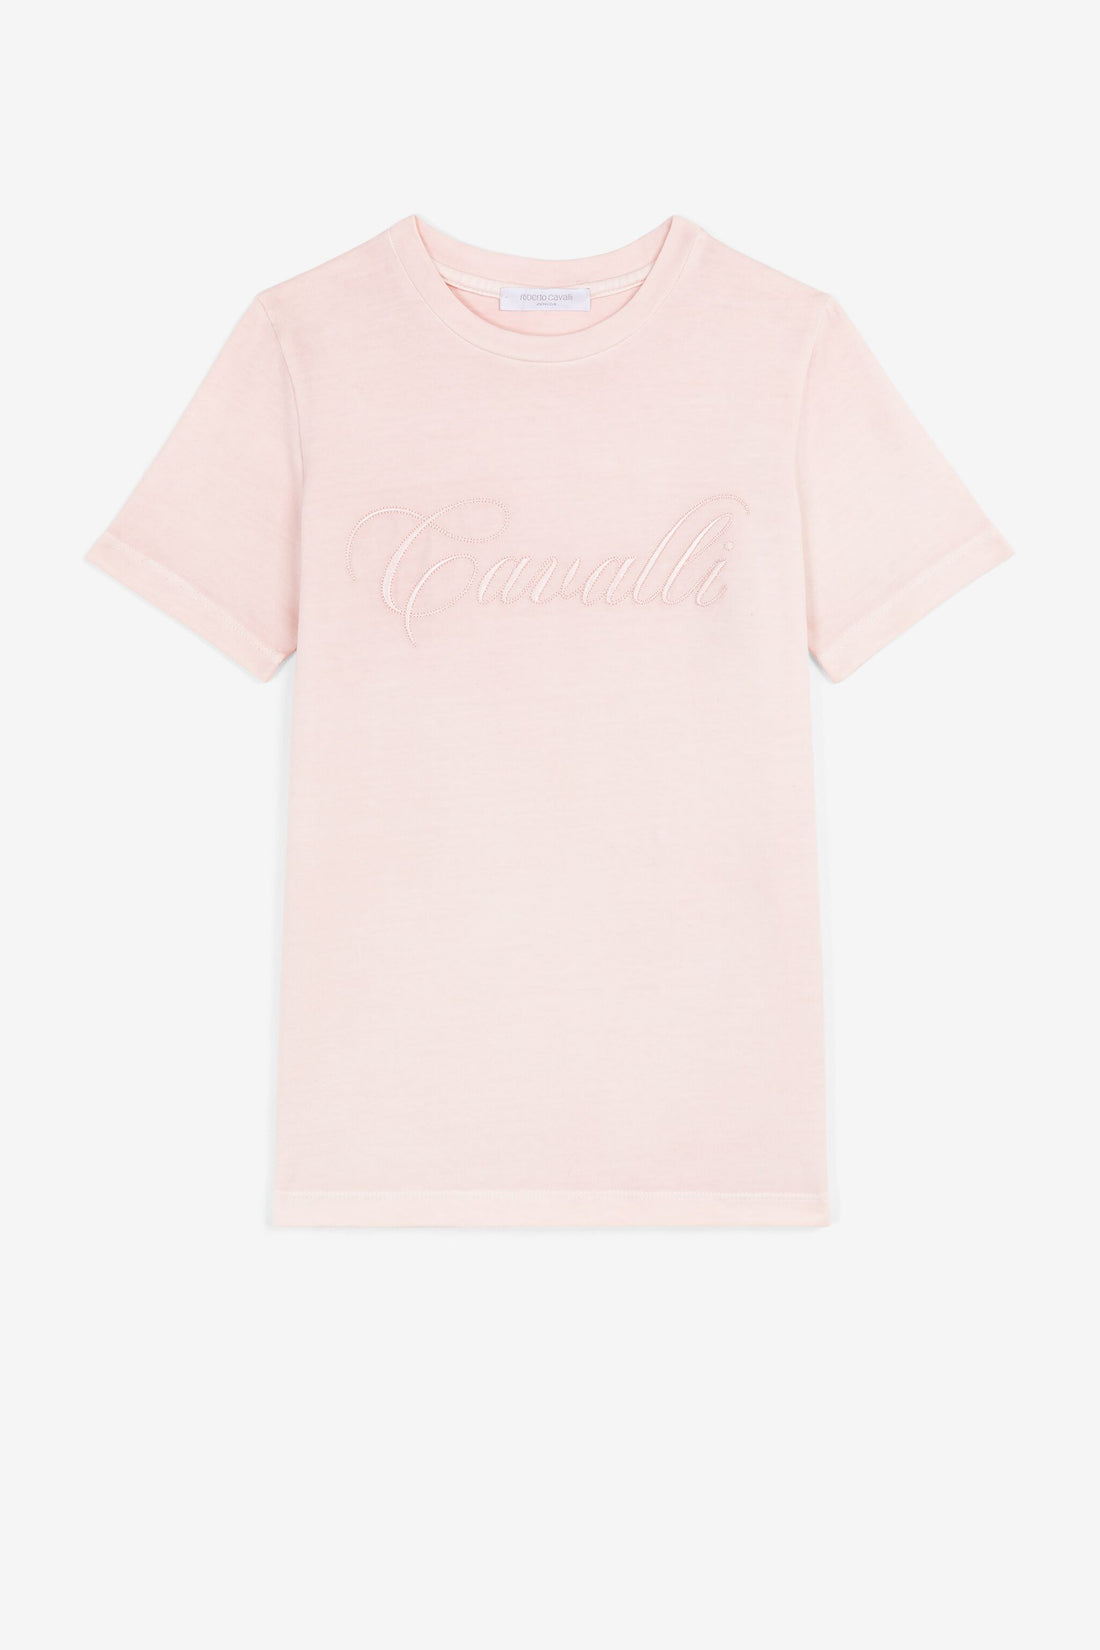 Roberto Cavalli Girl T Shirt